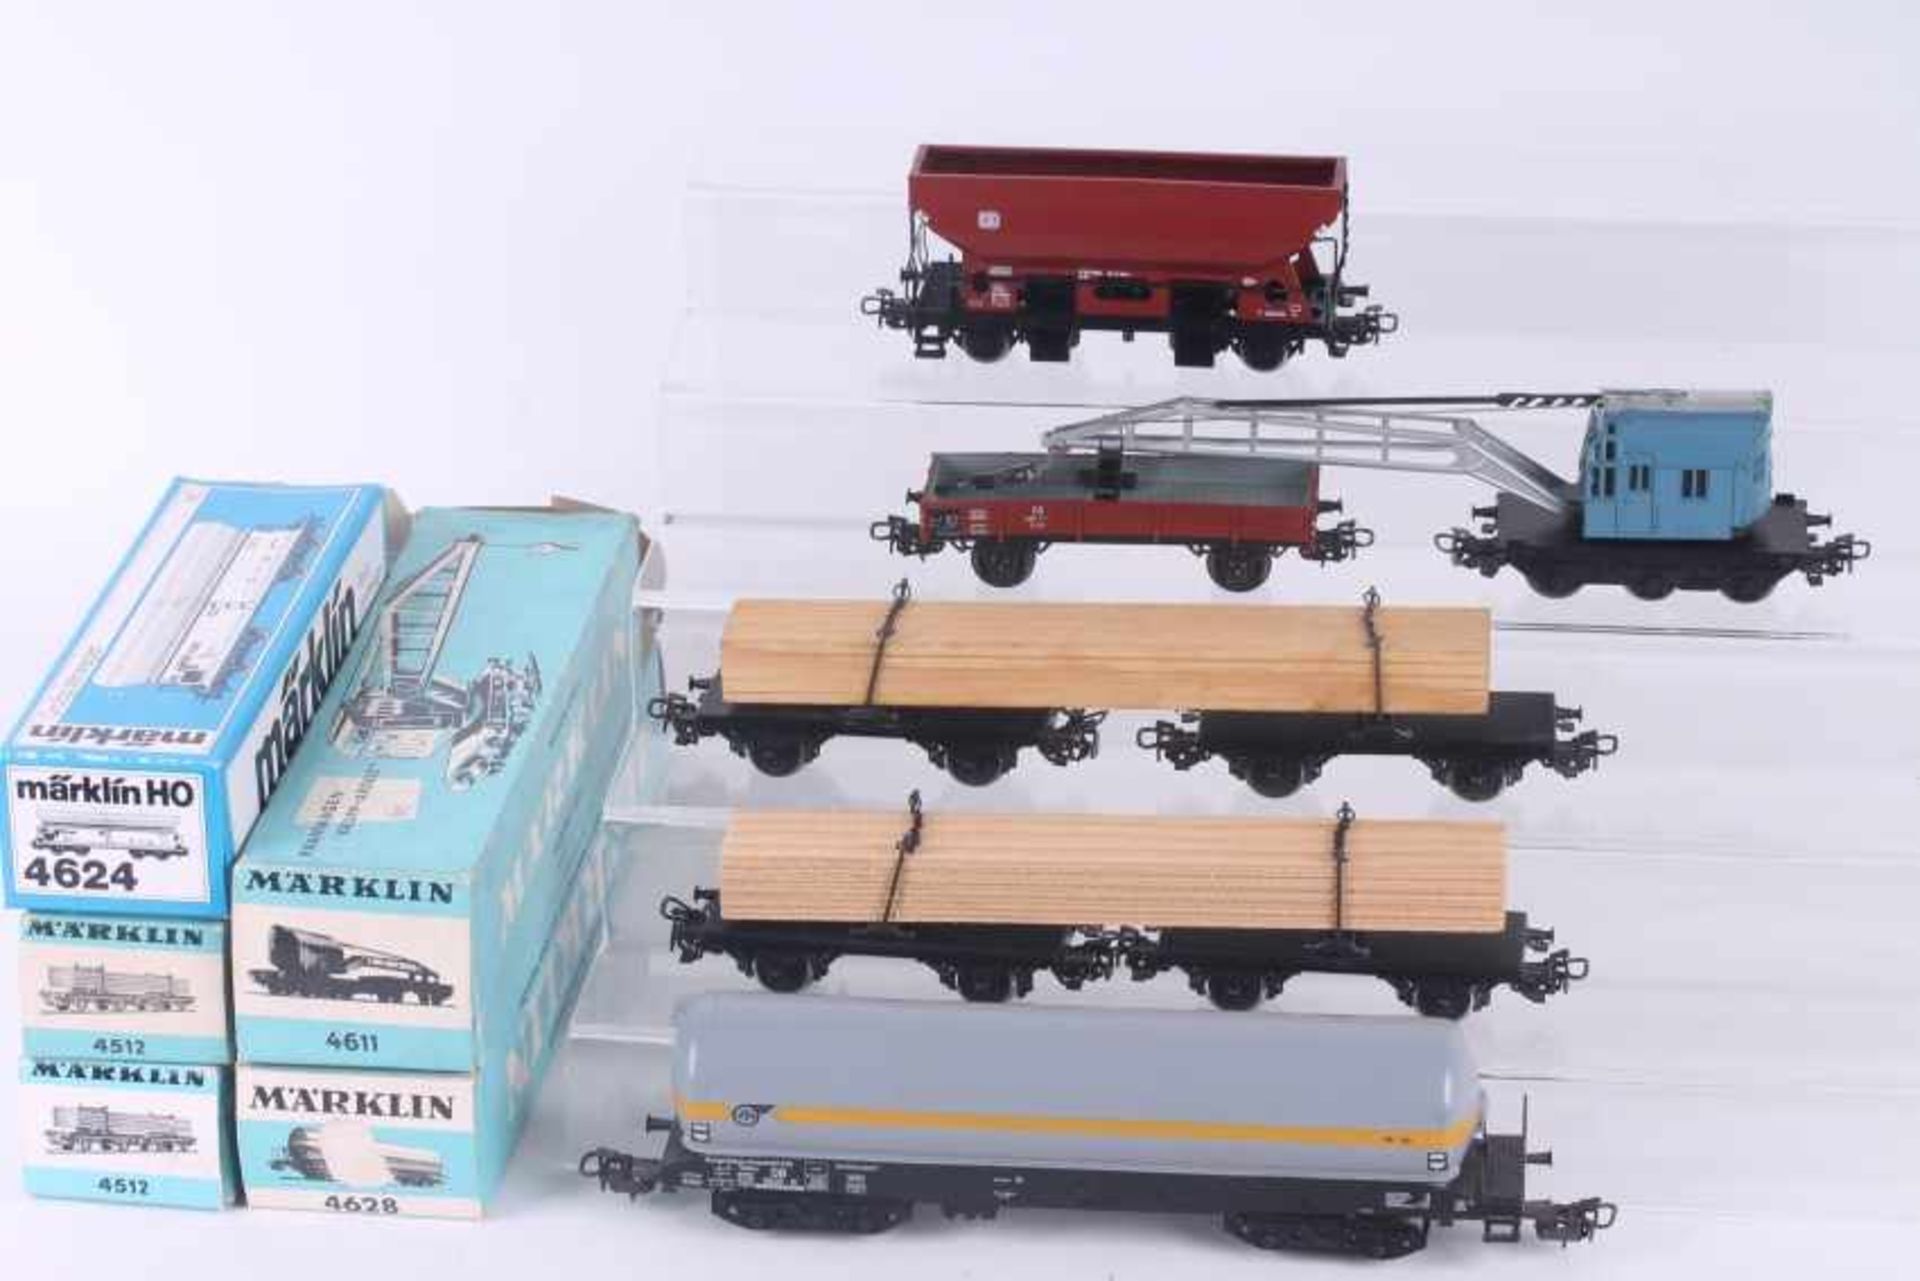 Märklin, sieben Güterwagen Märklin, sieben Güterwagen, 4503, 2 x 4512, 4513, 4611, 4624, 4628,